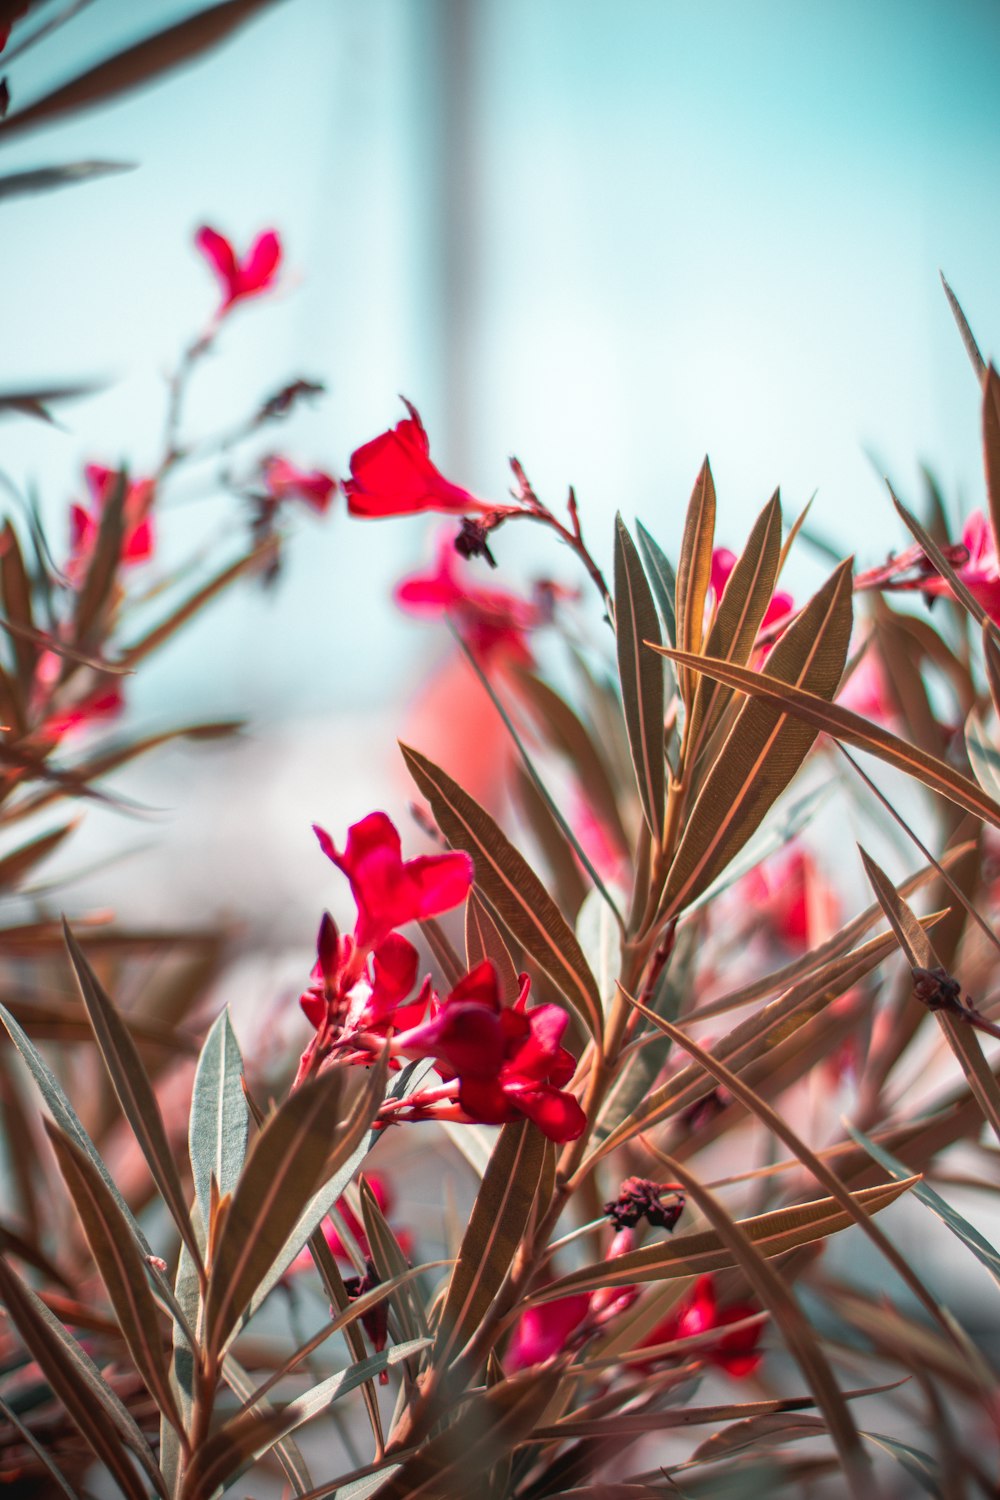 red flowers in tilt shift lens